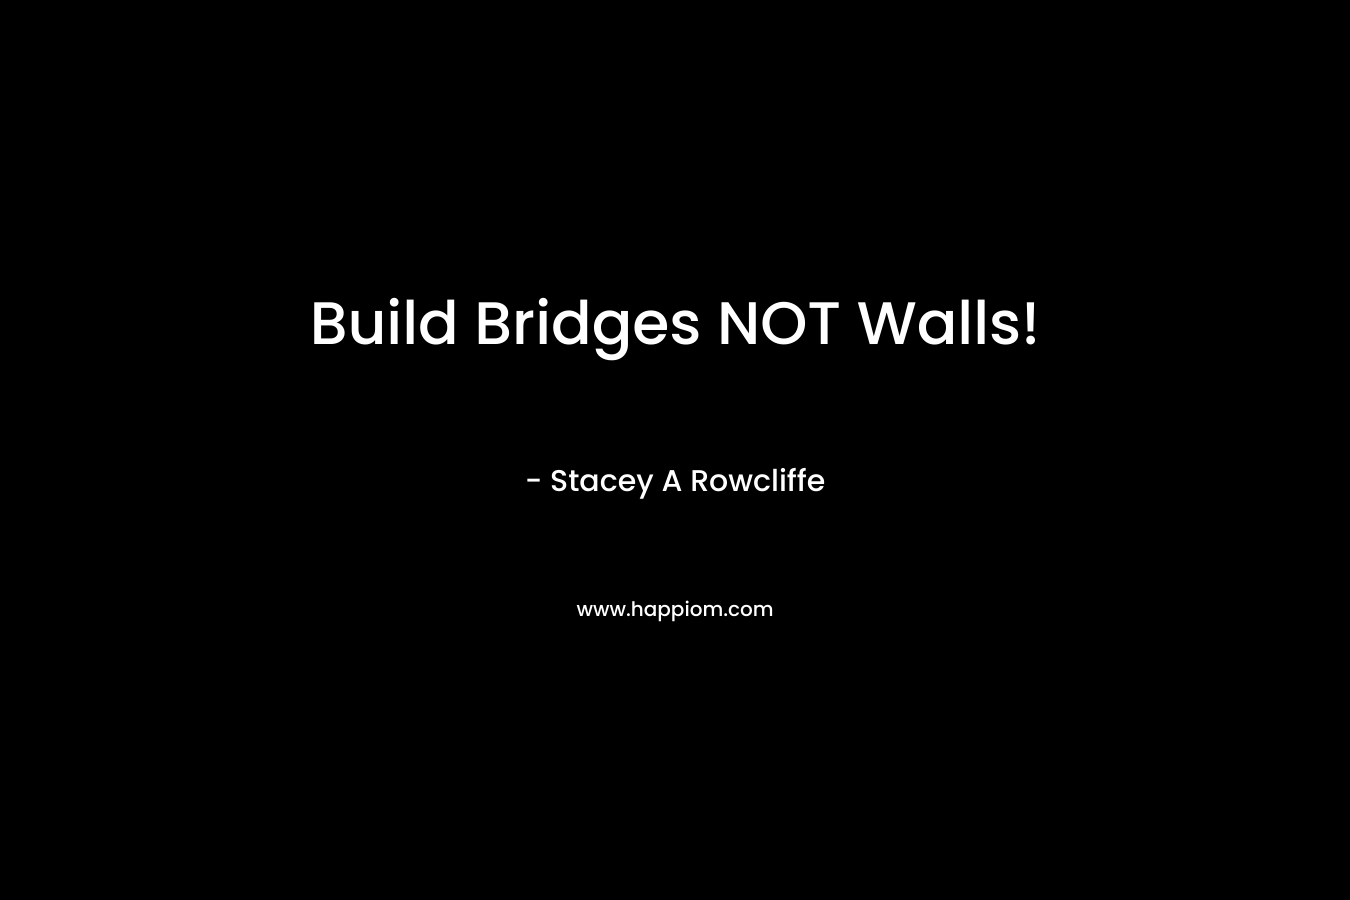 Build Bridges NOT Walls!